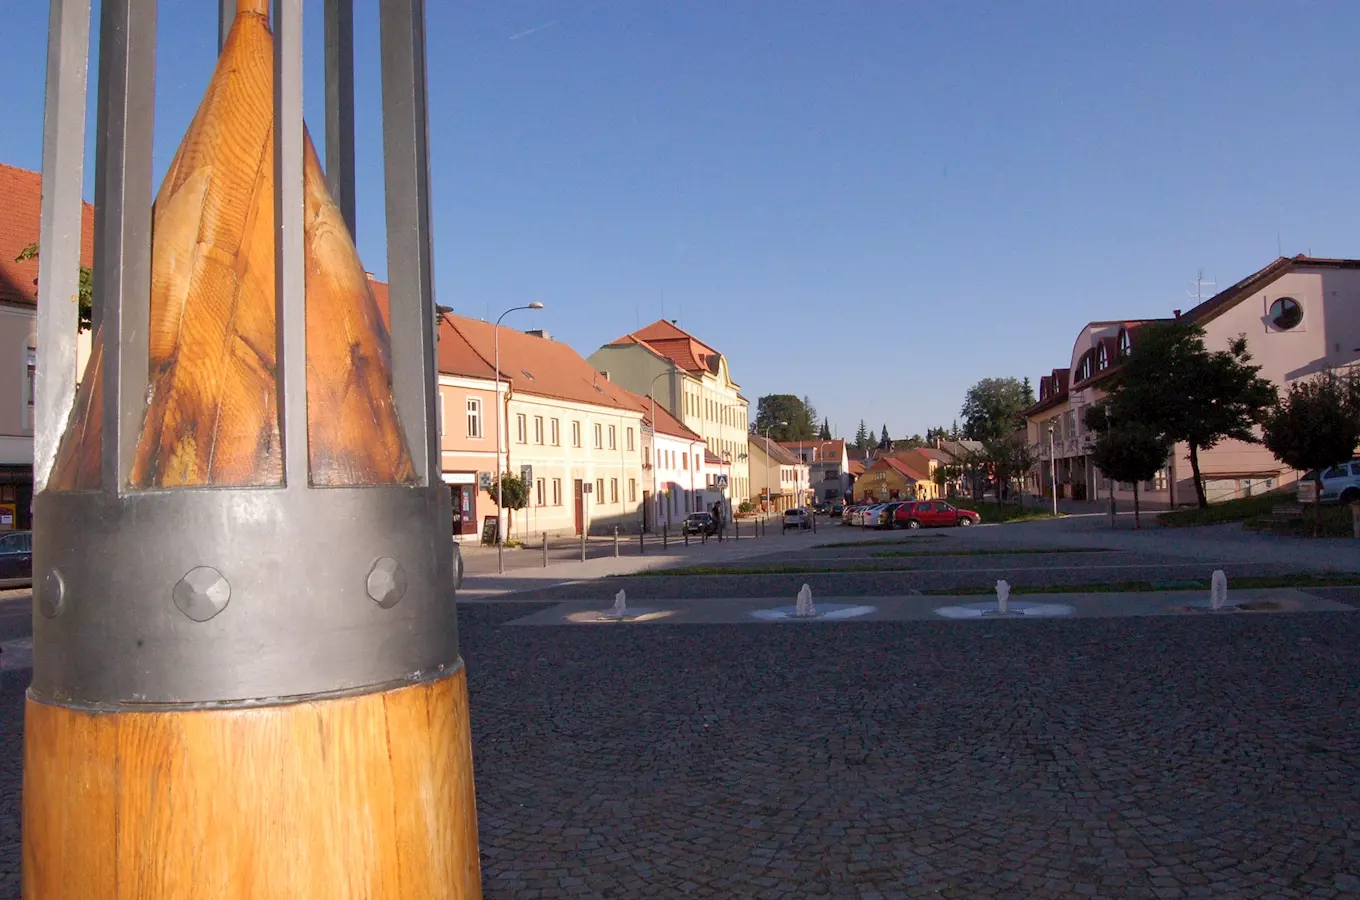 Sluneční hodiny v Třešti - největší ve střední Evropě